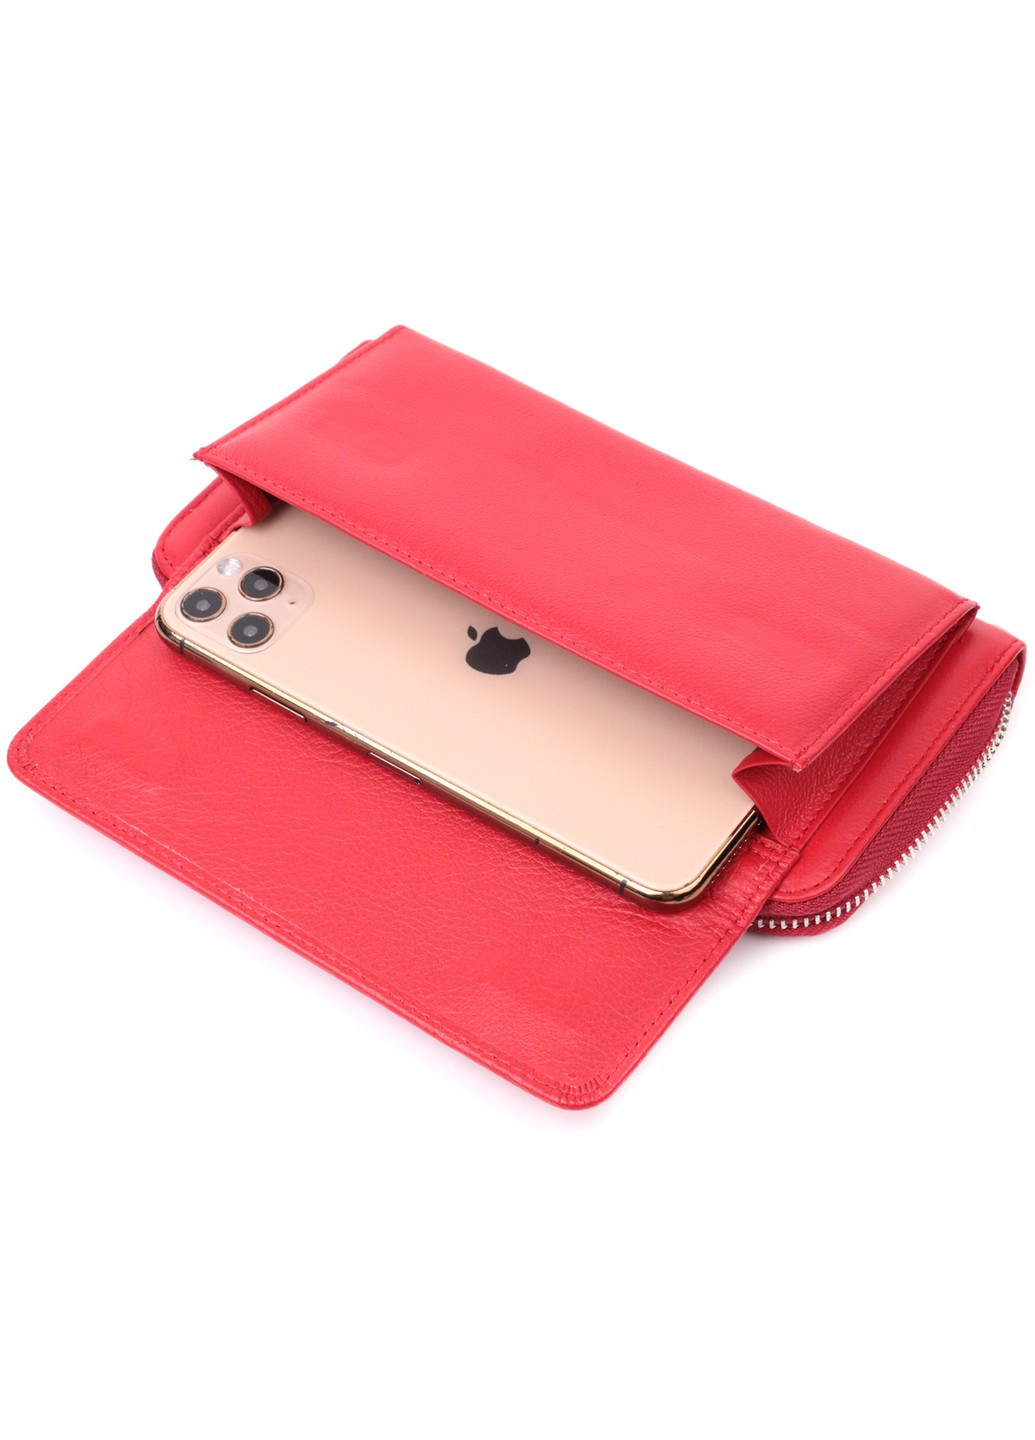 Симпатичный кошелек-клатч с ручкой для ношения в руке из натуральной кожи 22530 Красный st leather (277980482)